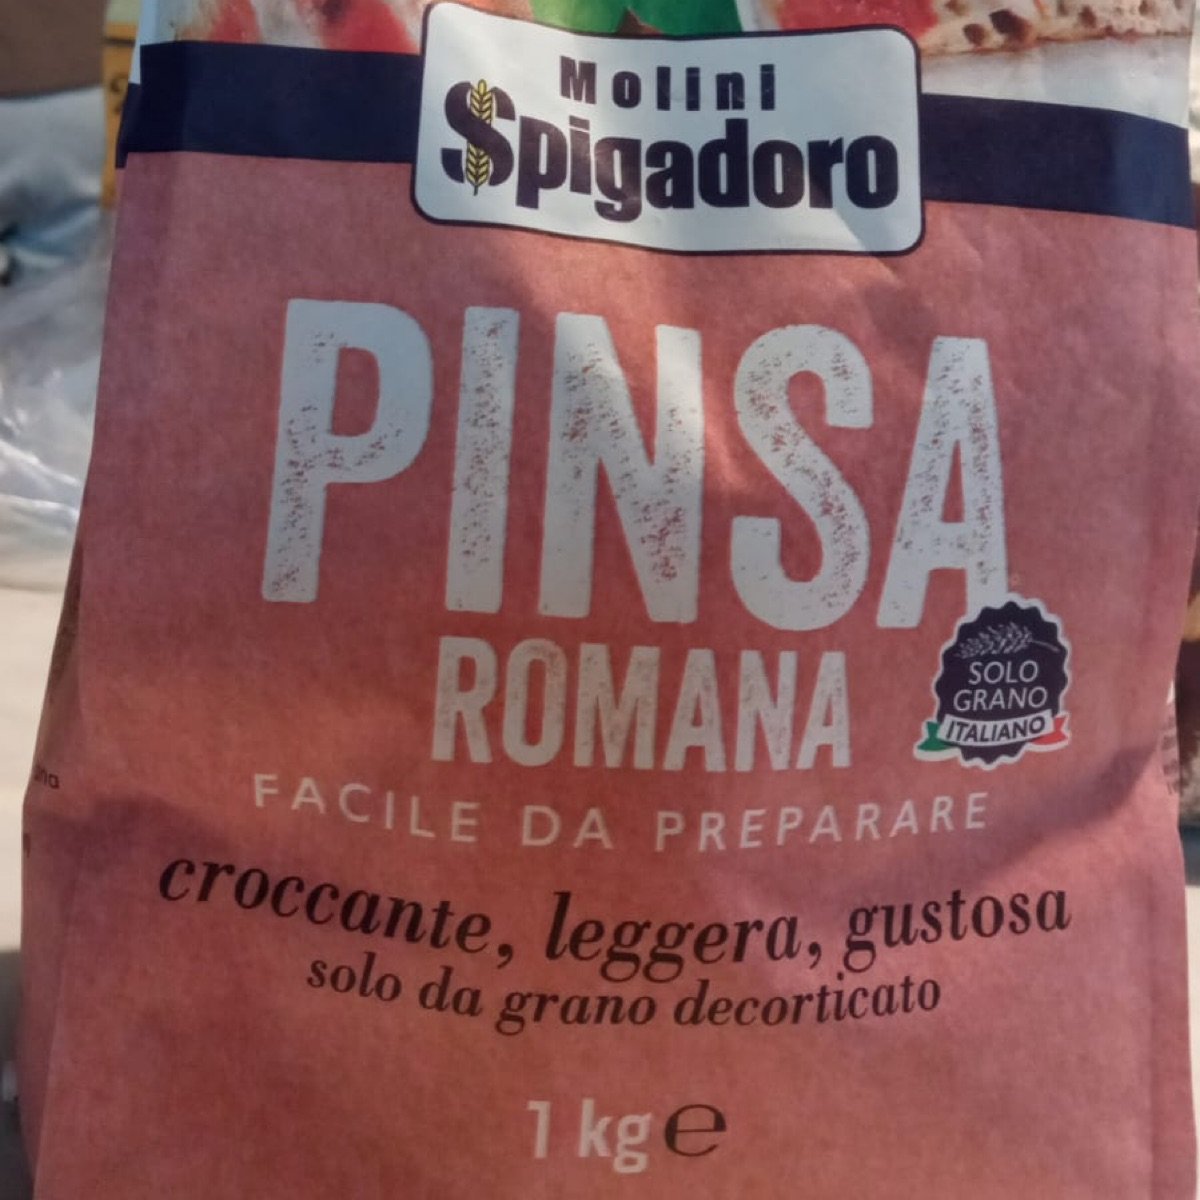 Molini Spigadoro Pinsa Review